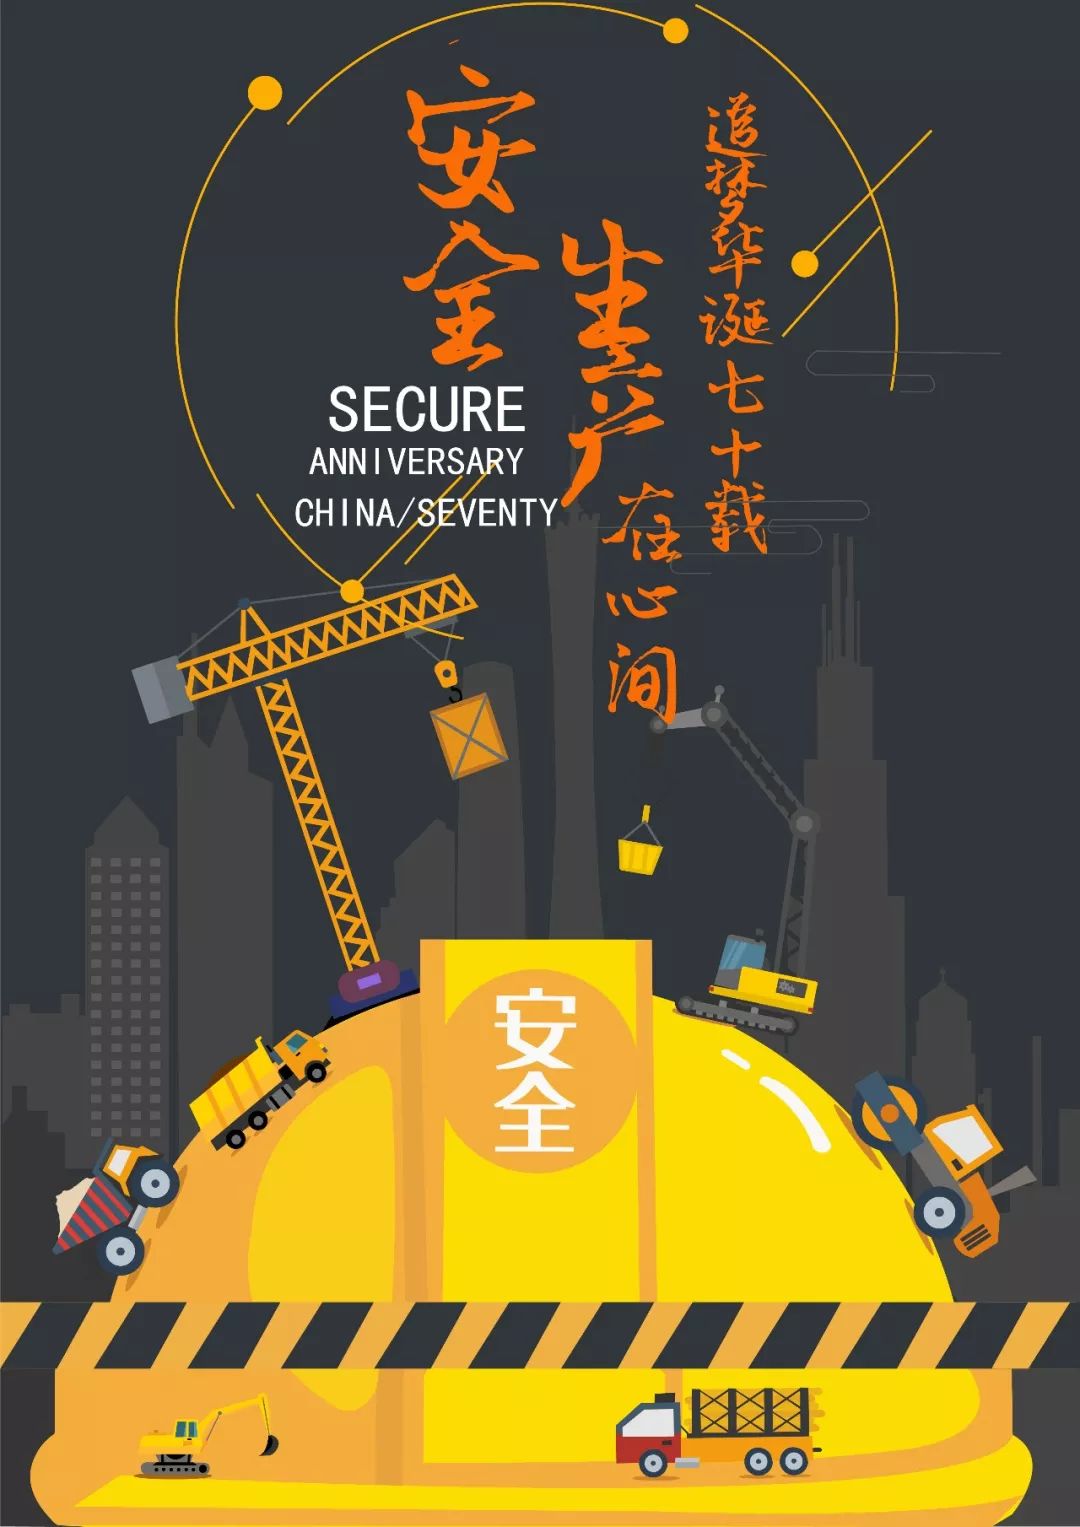 作品展示丨第二届安全生产主题海报设计比赛获奖作品来啦!